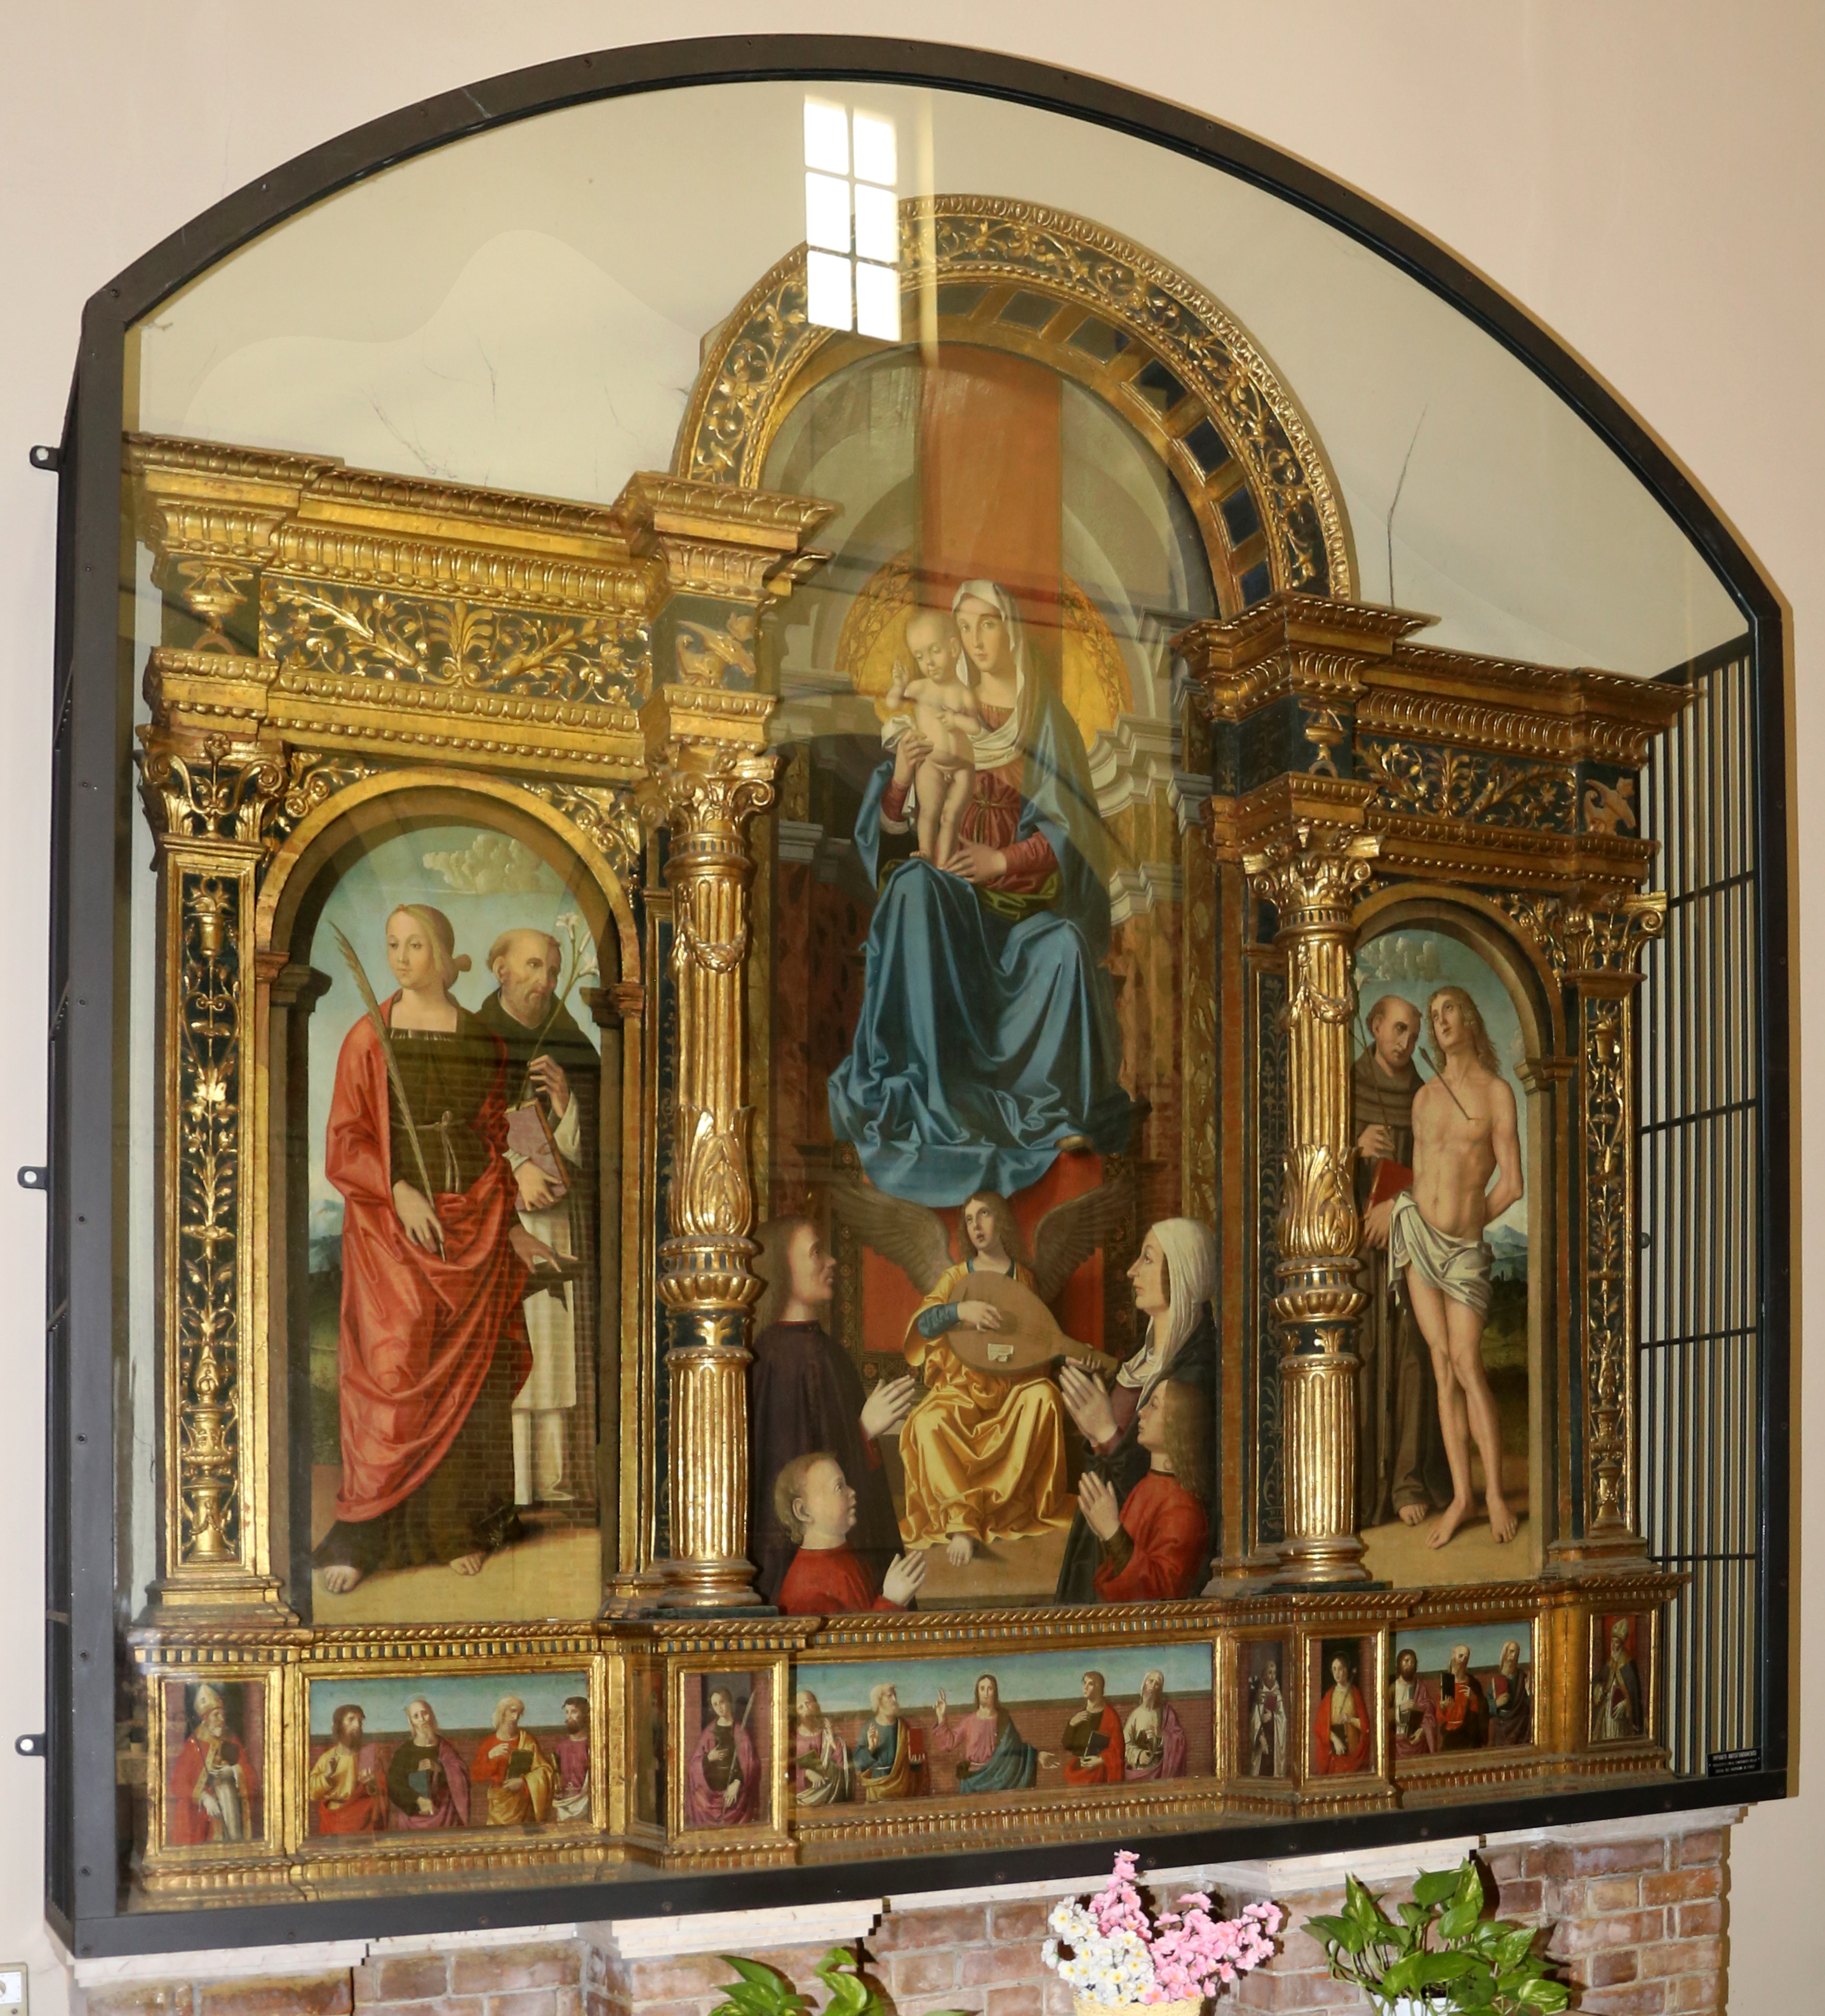 1486 Marco_palmezzano,_trittico famiglia Accorzi Chiesa di San Biagio (Forlì)